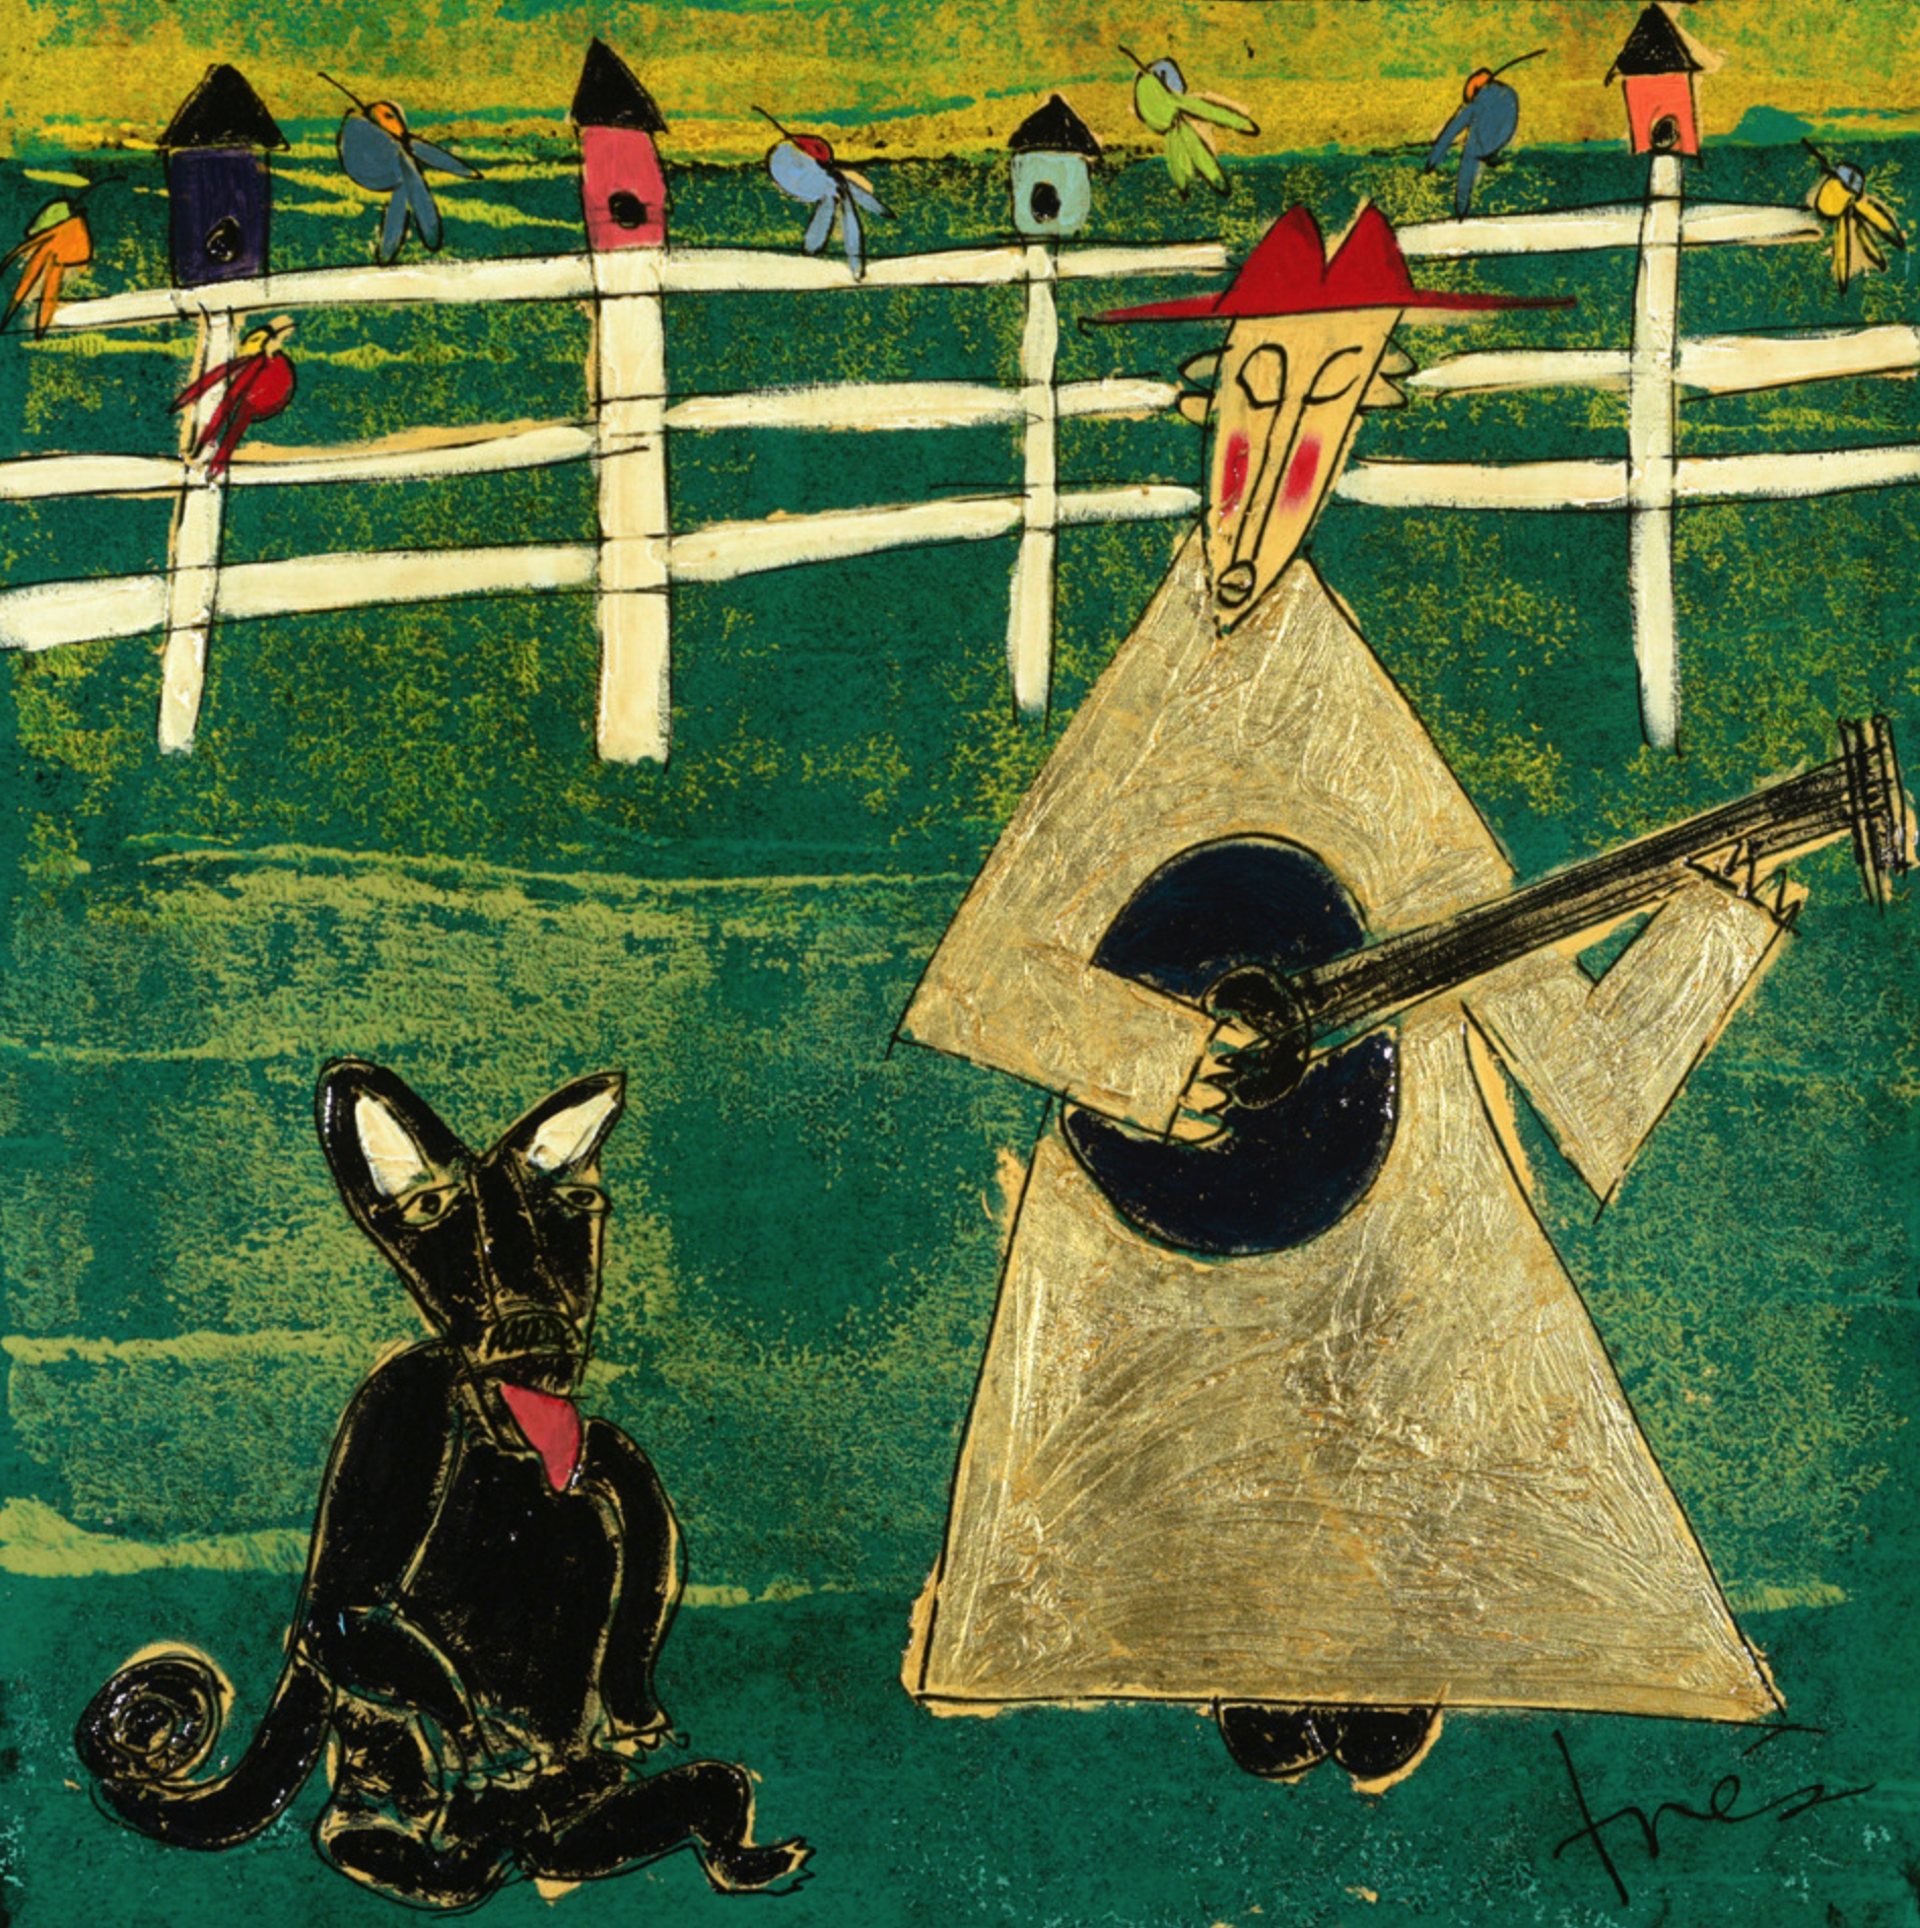 The Farm Dance by Trés Taylor